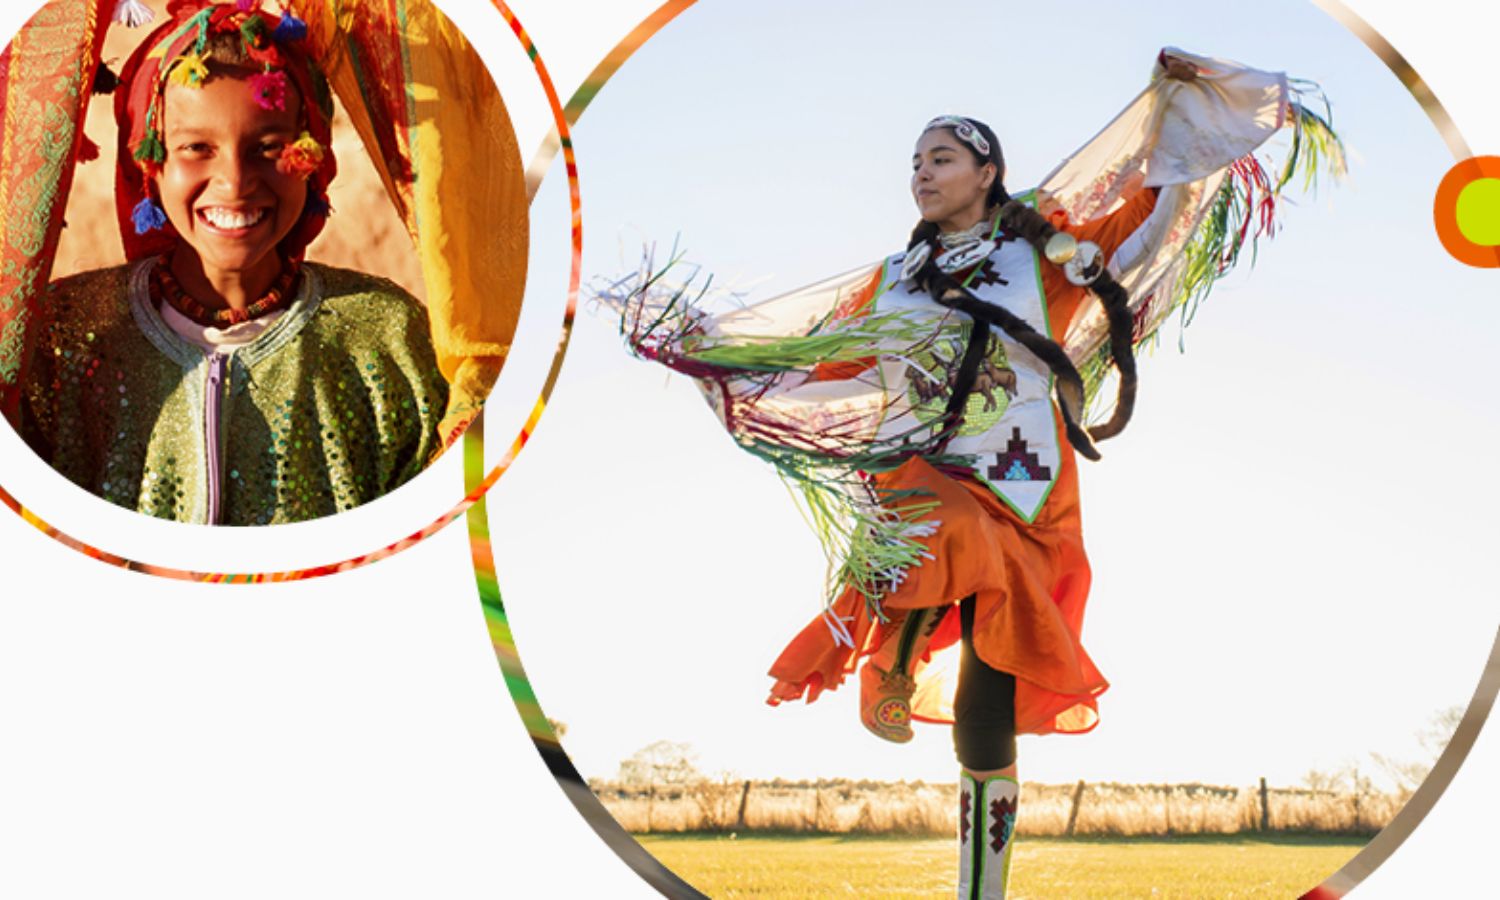 شابتان ترتديان ملابس تعبر عن ثقافة مجتمعاتهما الأصلية (الويبو)